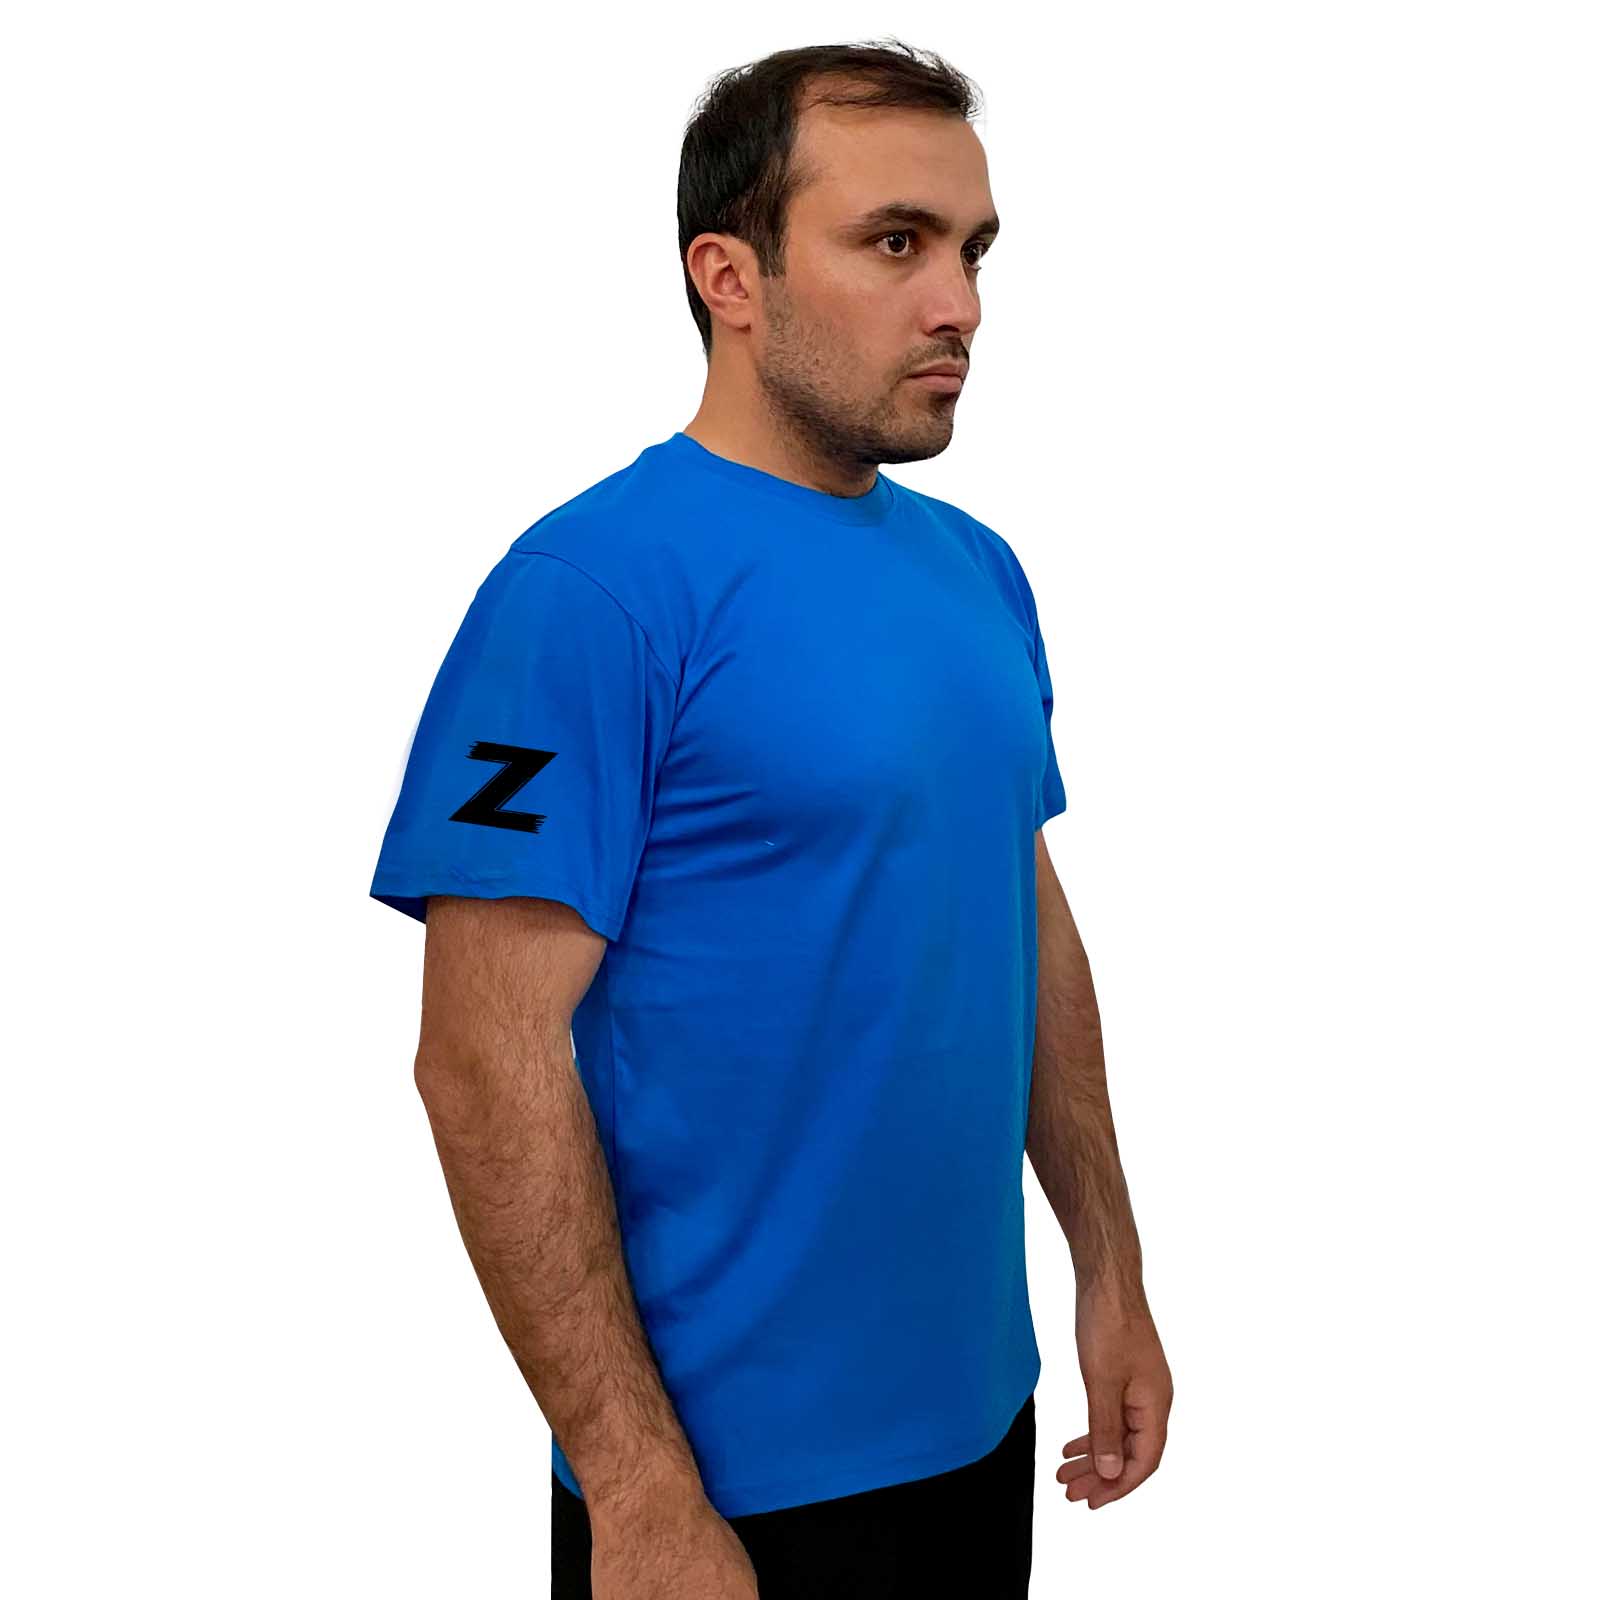 Купить мужскую надежную футболку с литерой Z с доставкой в ваш город